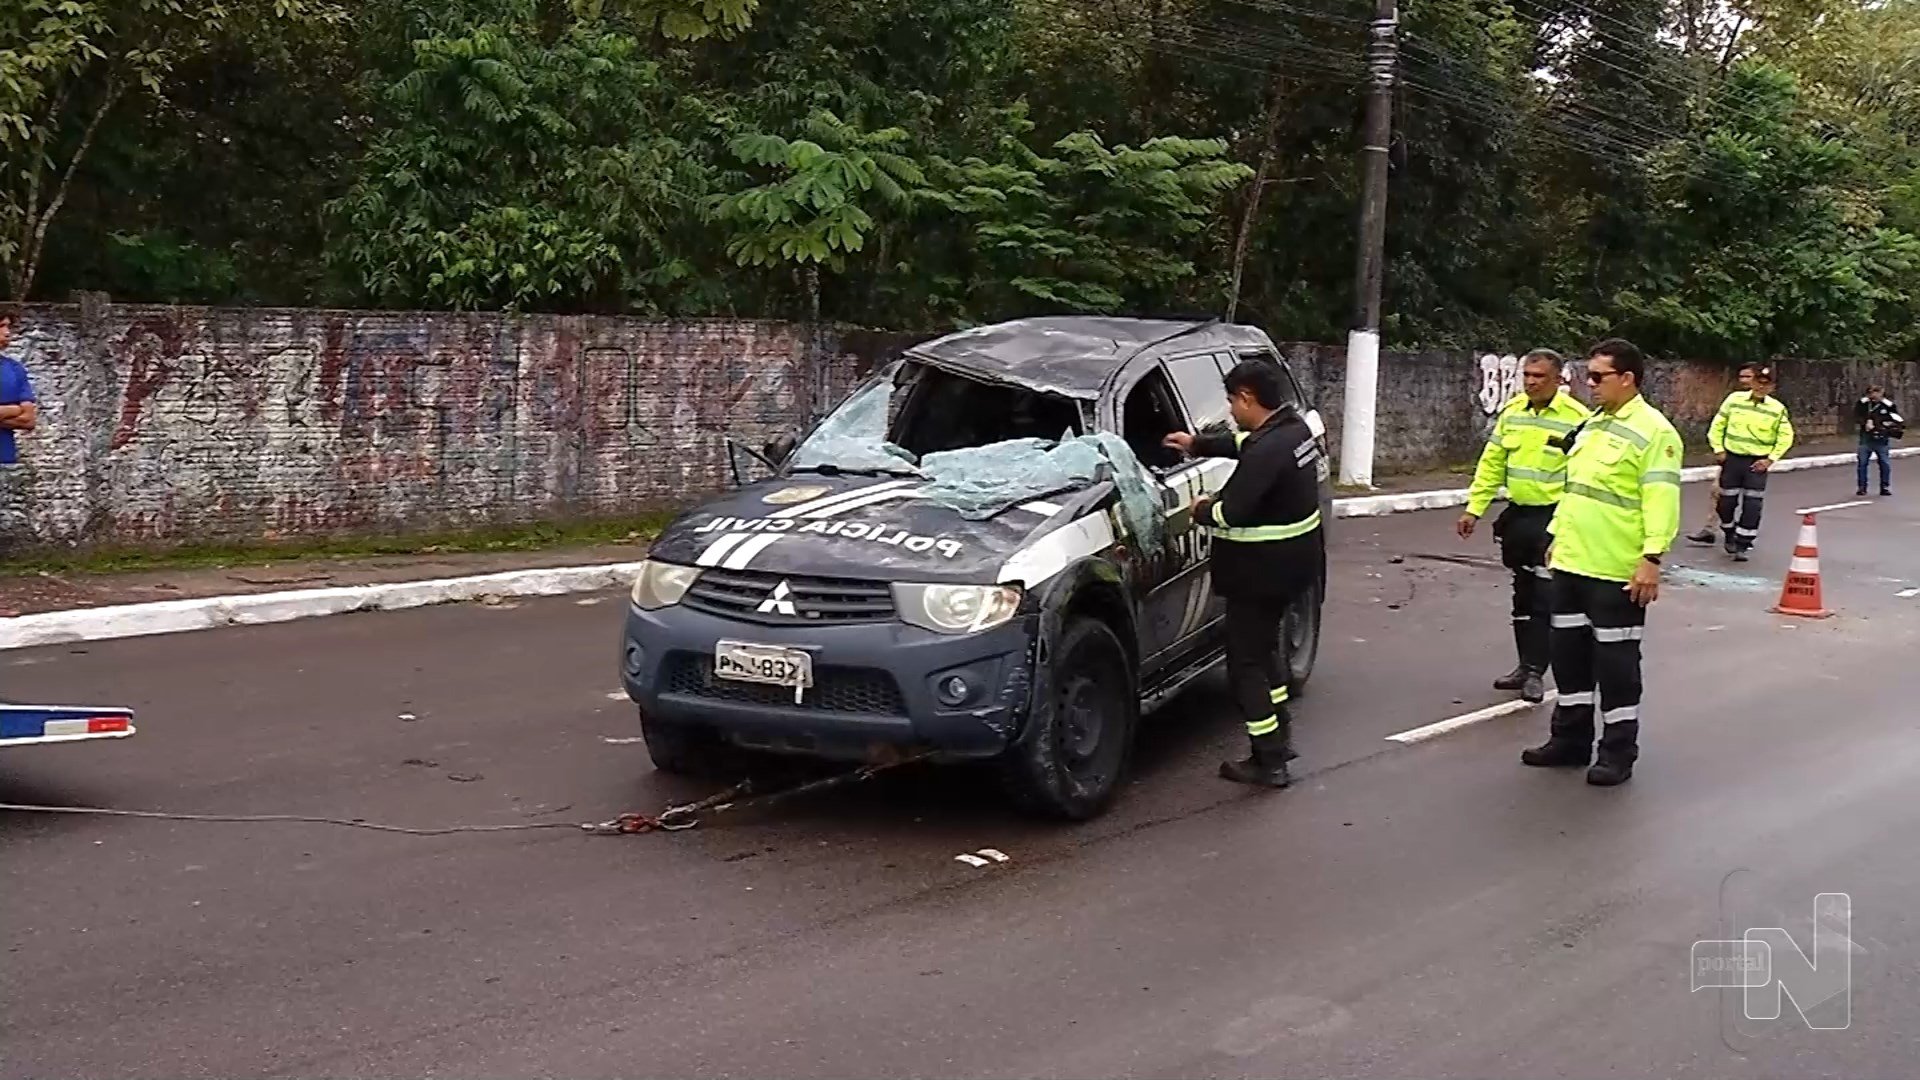 Investigador da polícia civil fica ferido após viatura capotar em Manaus